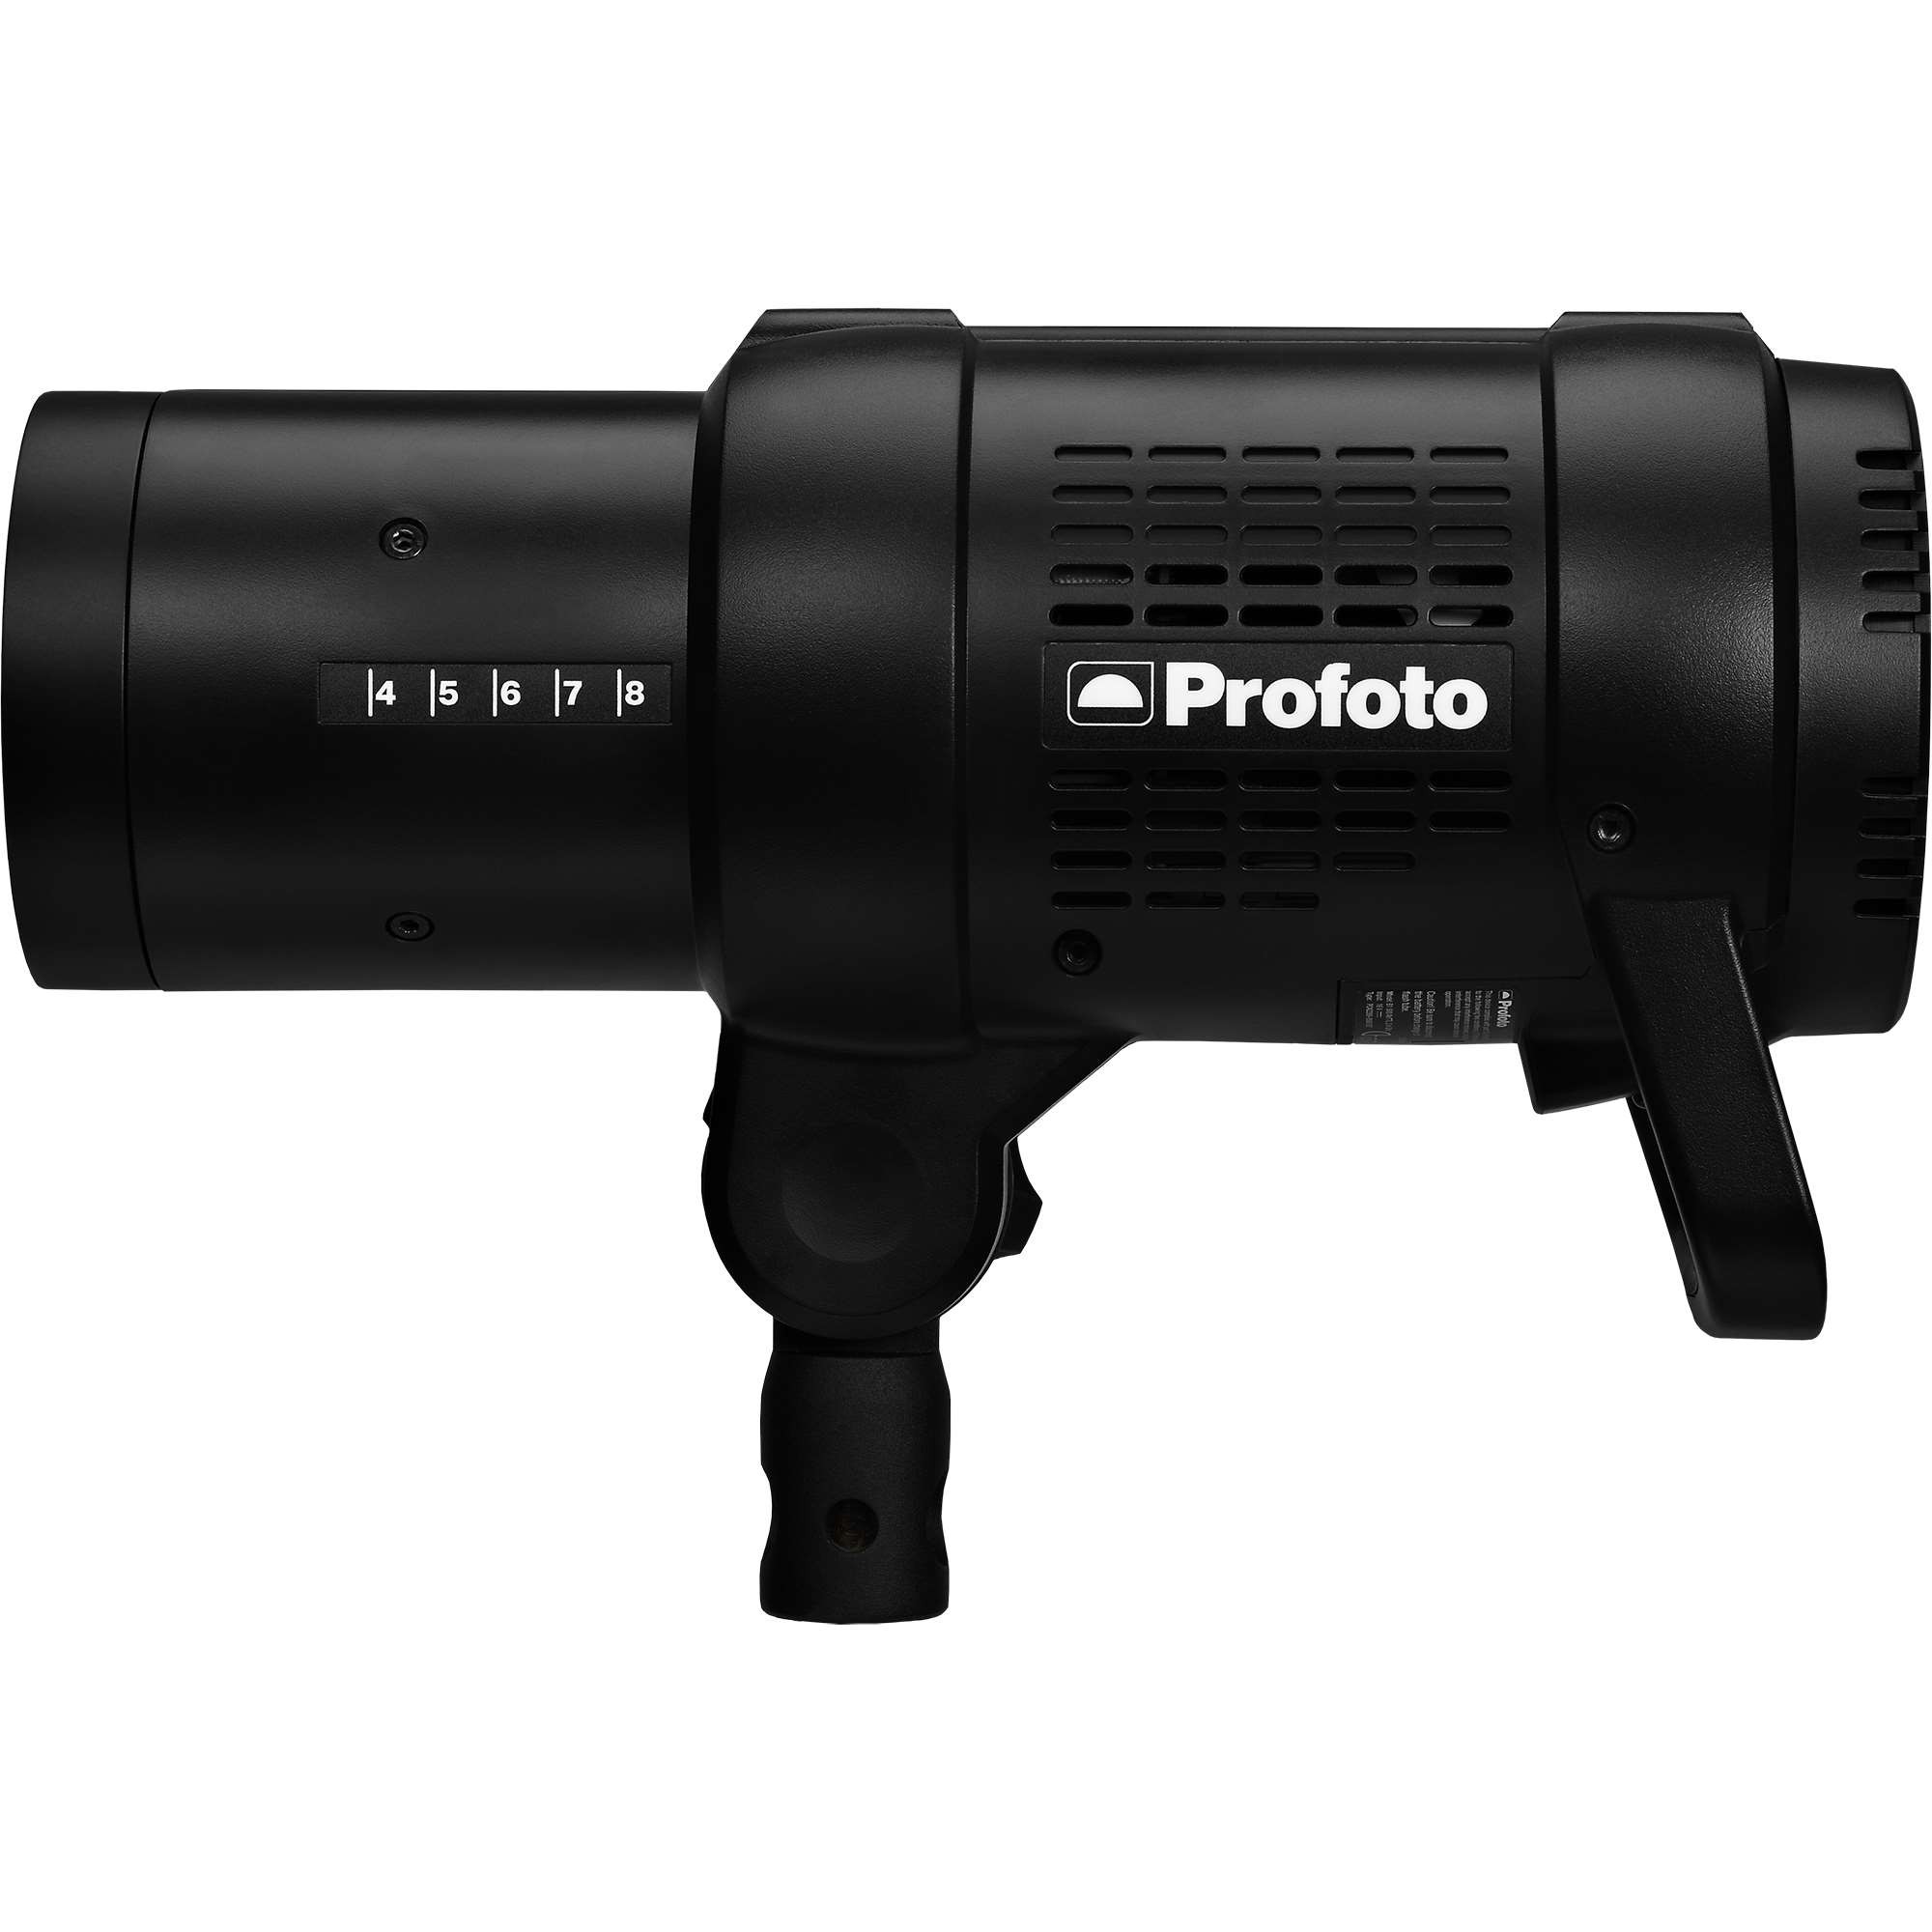 プロフォト Profotob1x500airttl 写真業界特化の法人向けオンラインショッピングサイト Photol Pro フォトルプロ